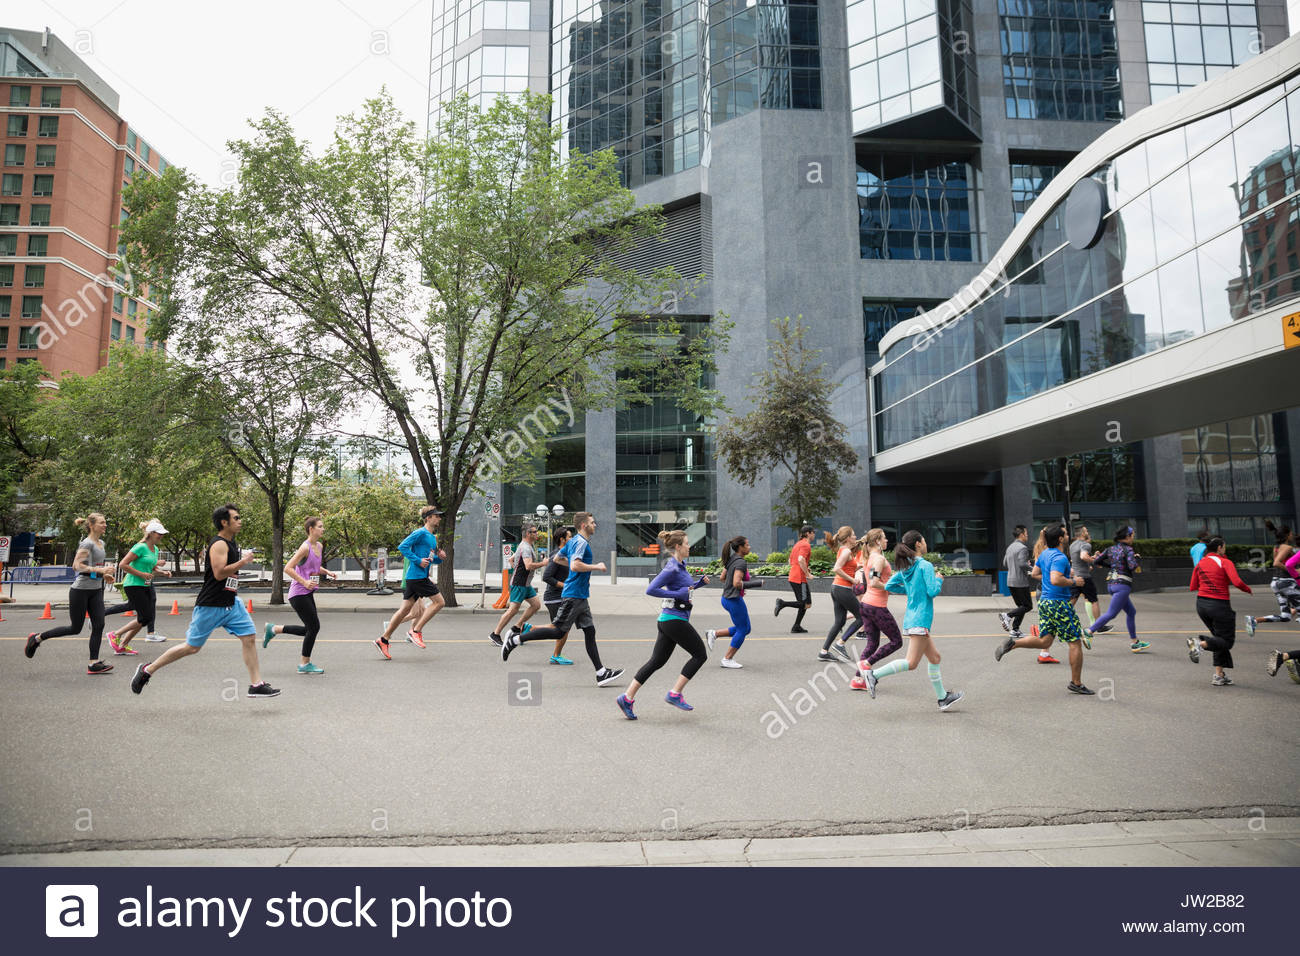 Marathon runners running on urban street Stock Photo